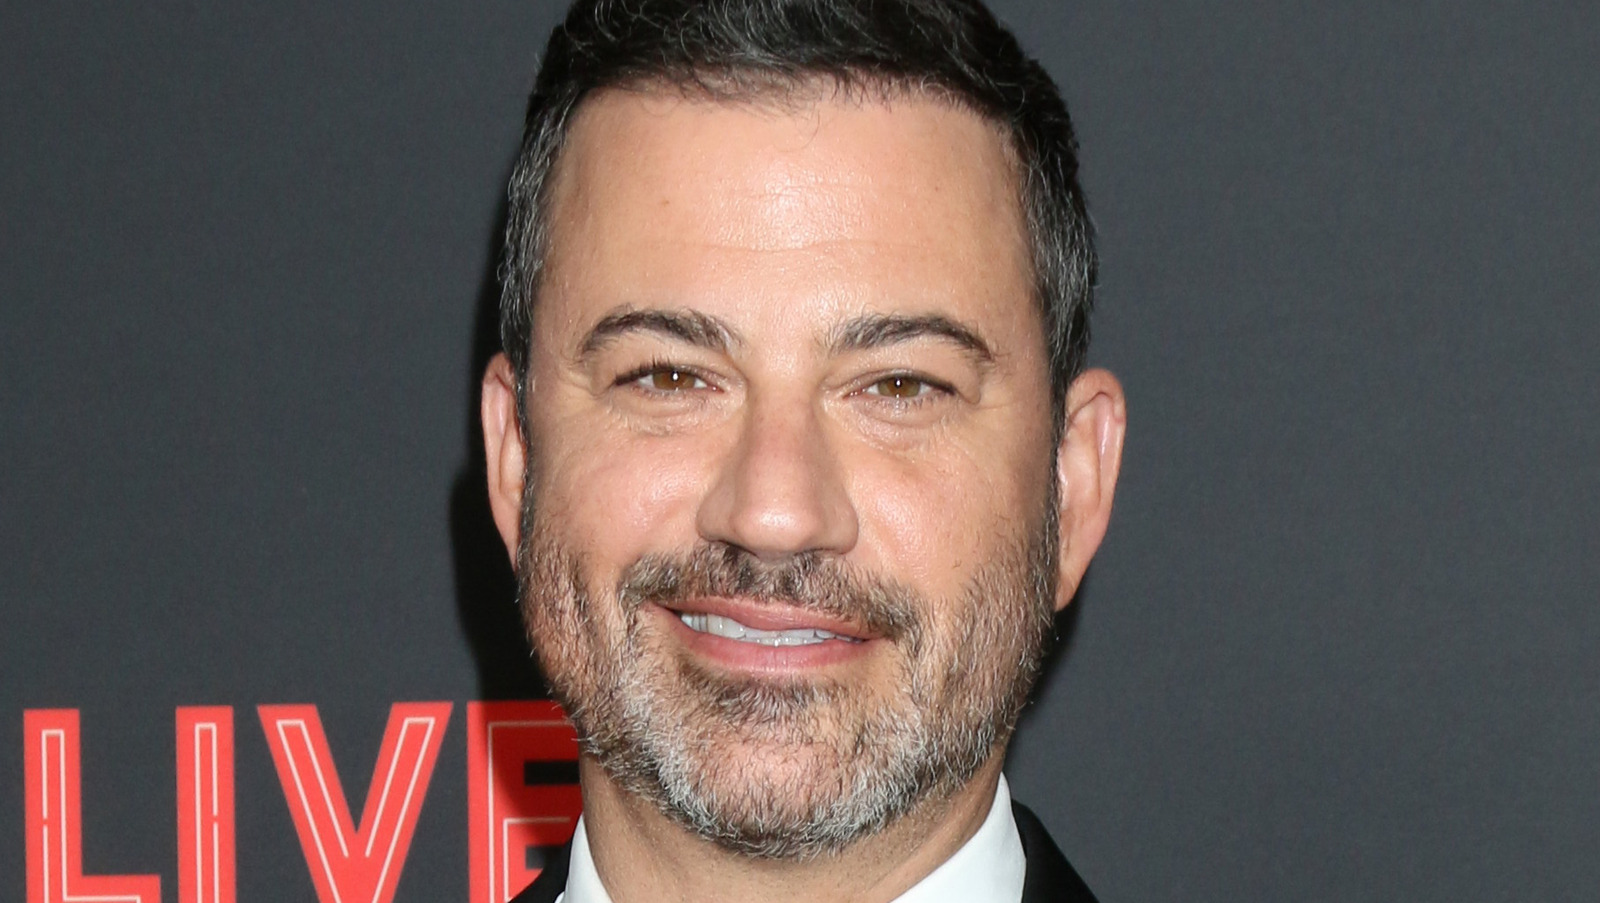 The Talk Show Host That Inspired Jimmy Kimmel's Career